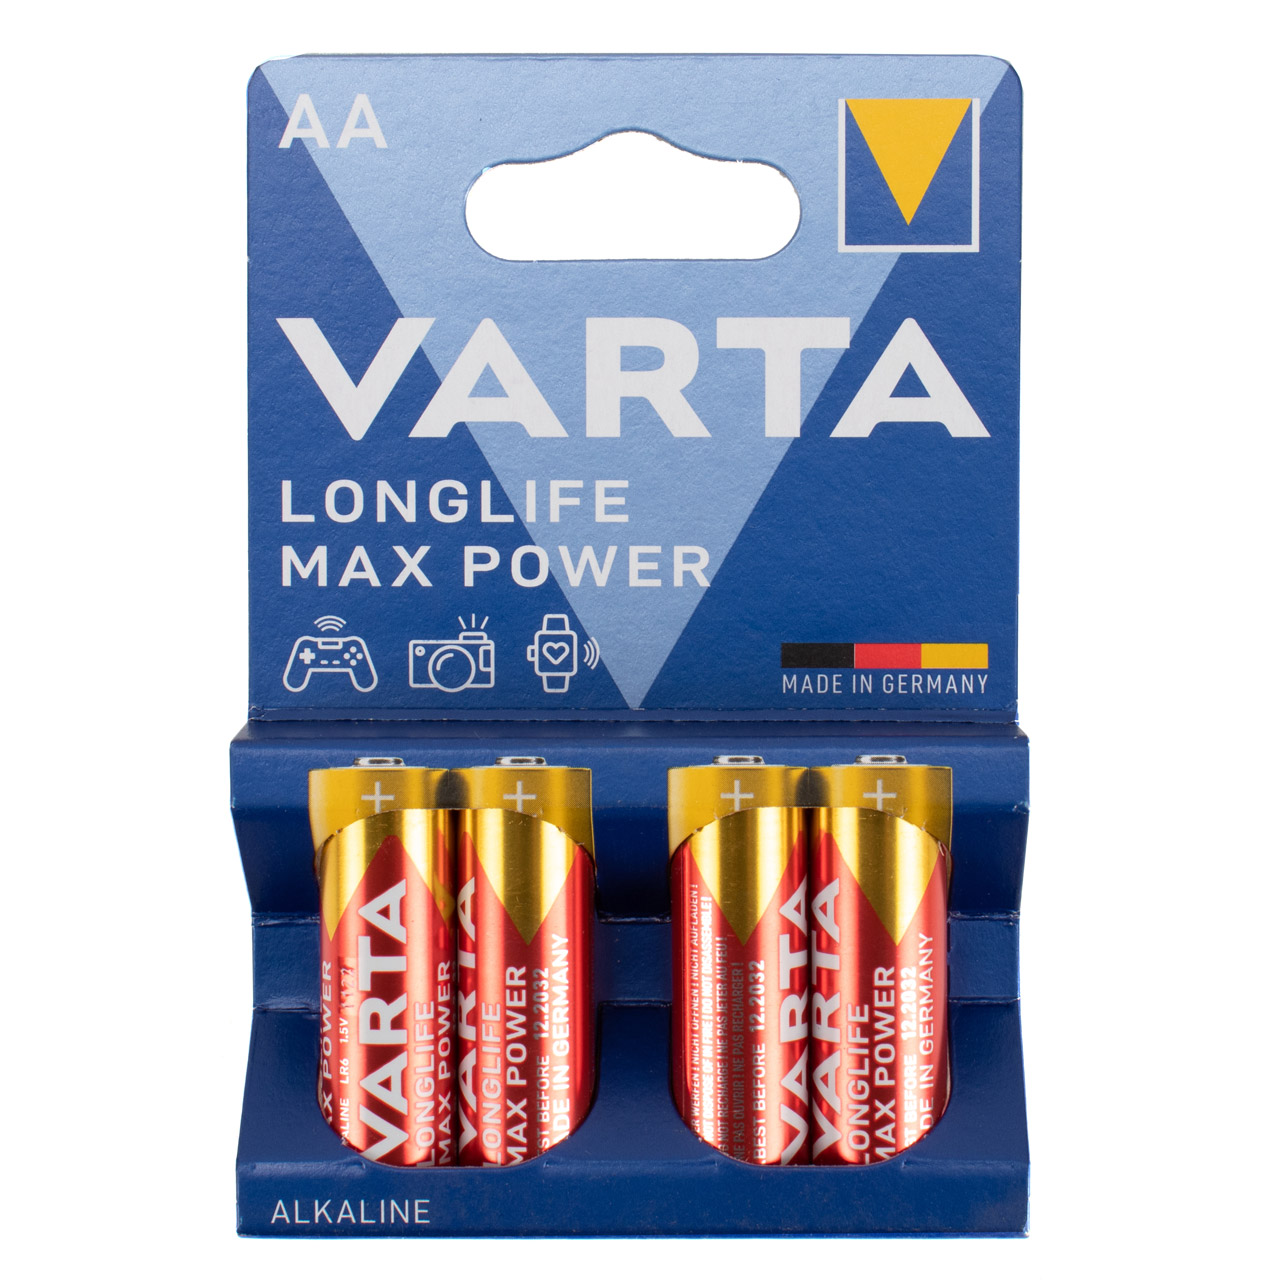 4x VARTA LONGLIFE MAX POWER ALKALINE Batterie AA MIGNON 4706 LR6 MN1500 1,5V